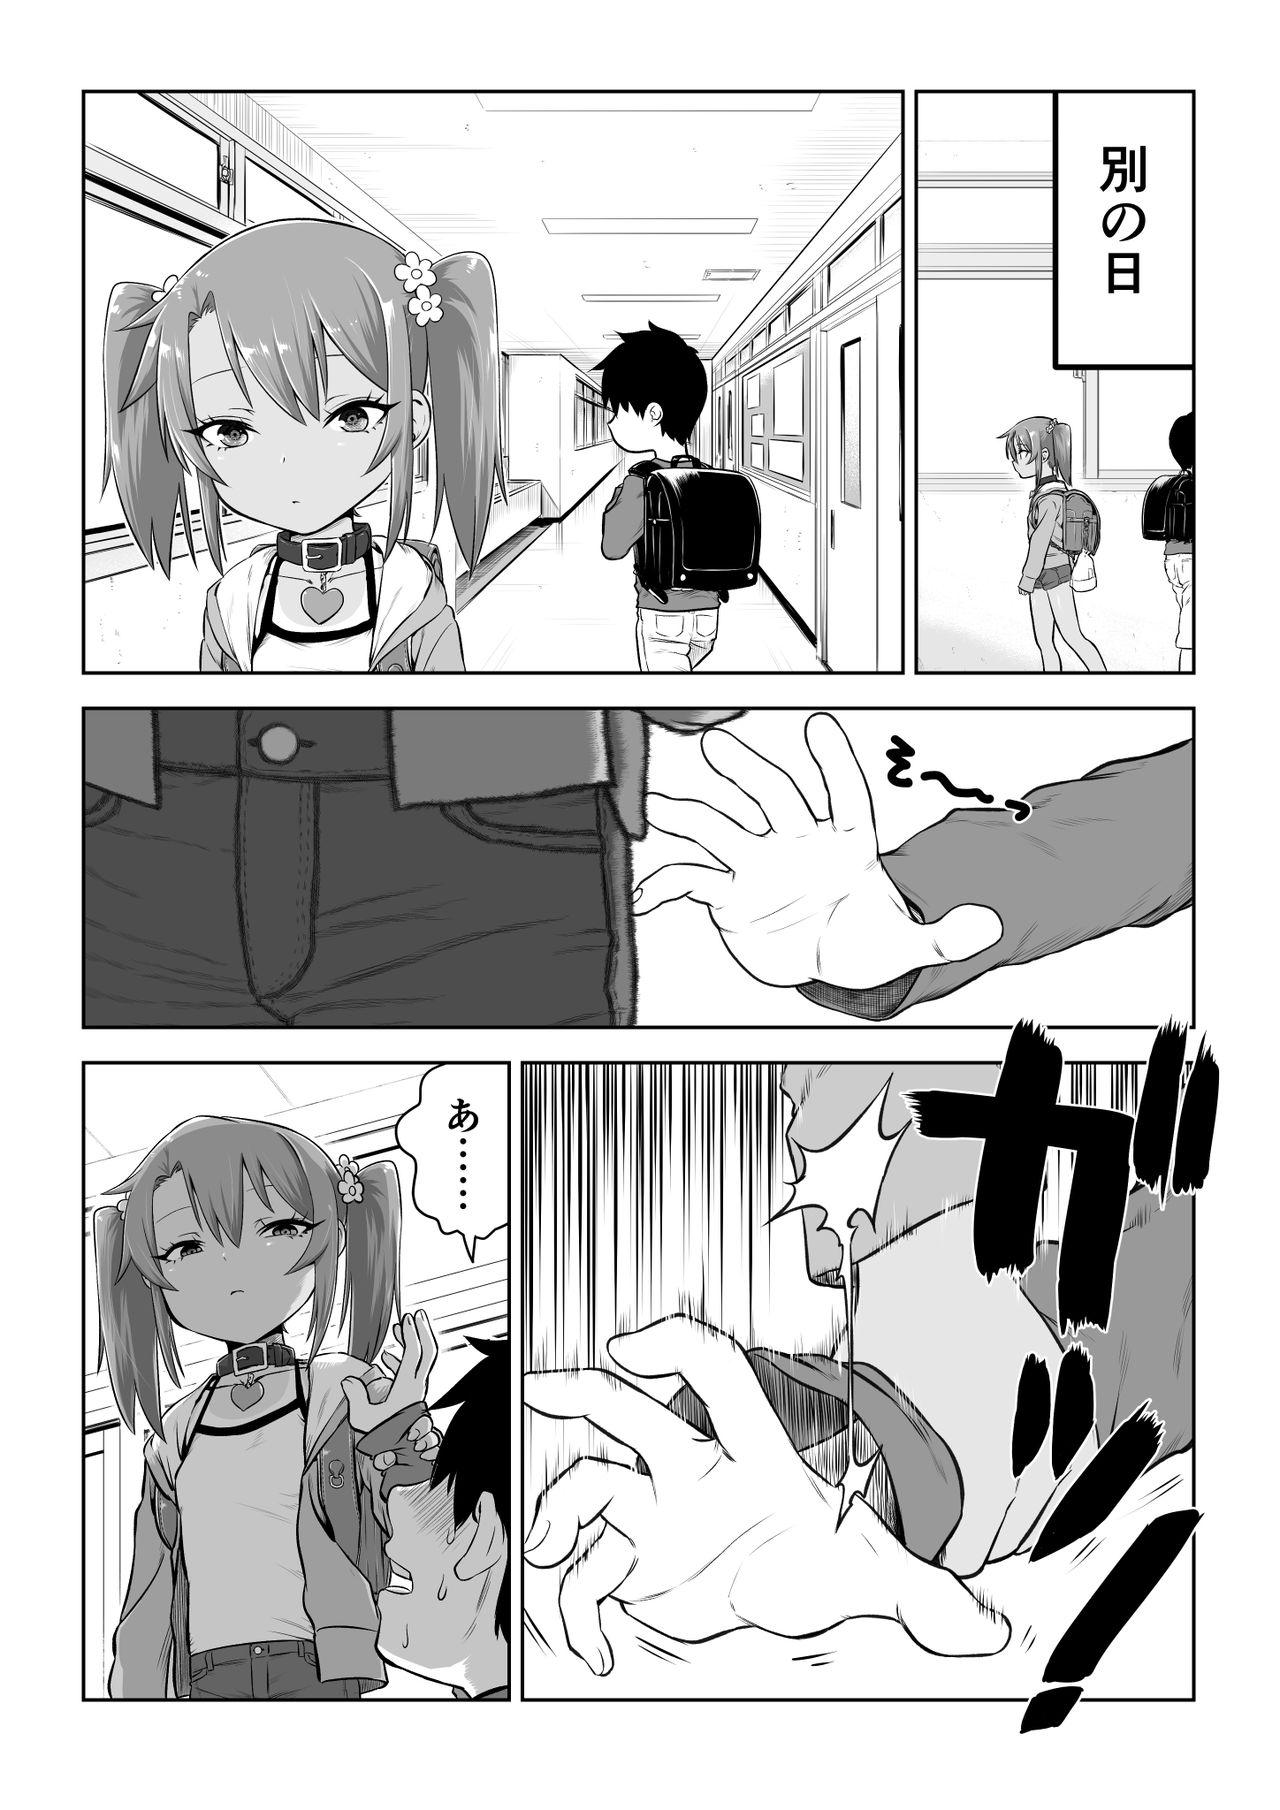 Bareback Yuma-chan's Web manga - Original Transexual - Page 10